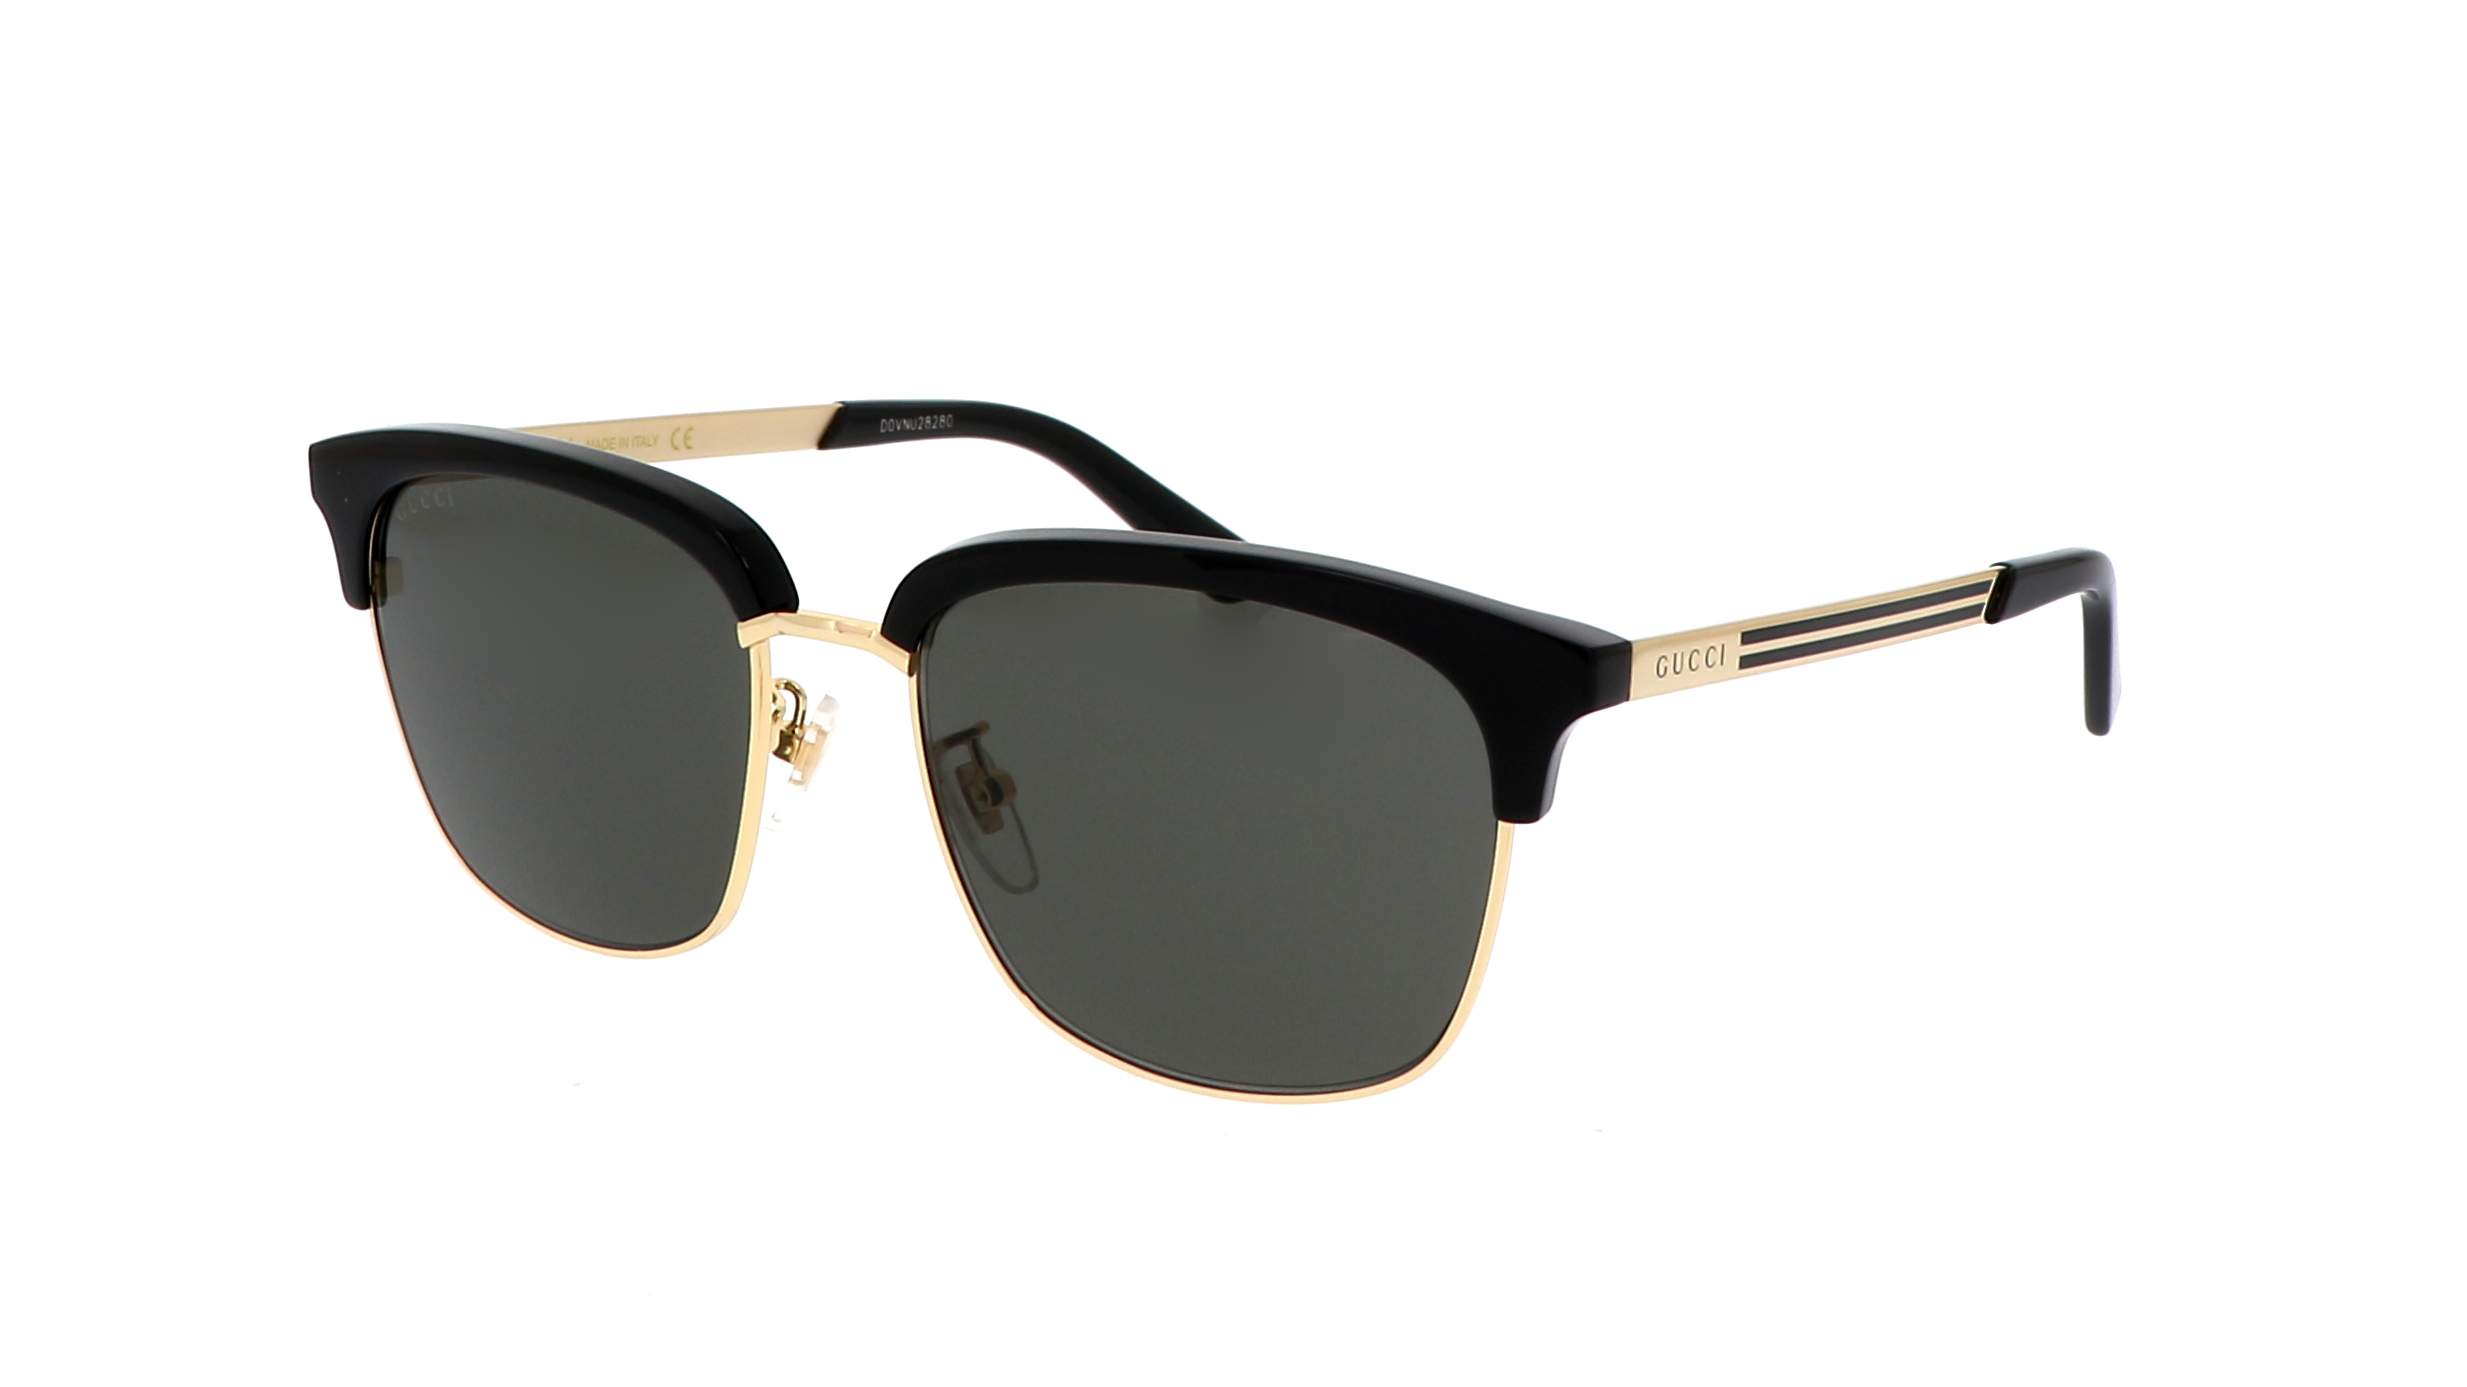 Sunglasses Gucci GG0697S 001 55-18 Black in stock | Price 173,25 ...